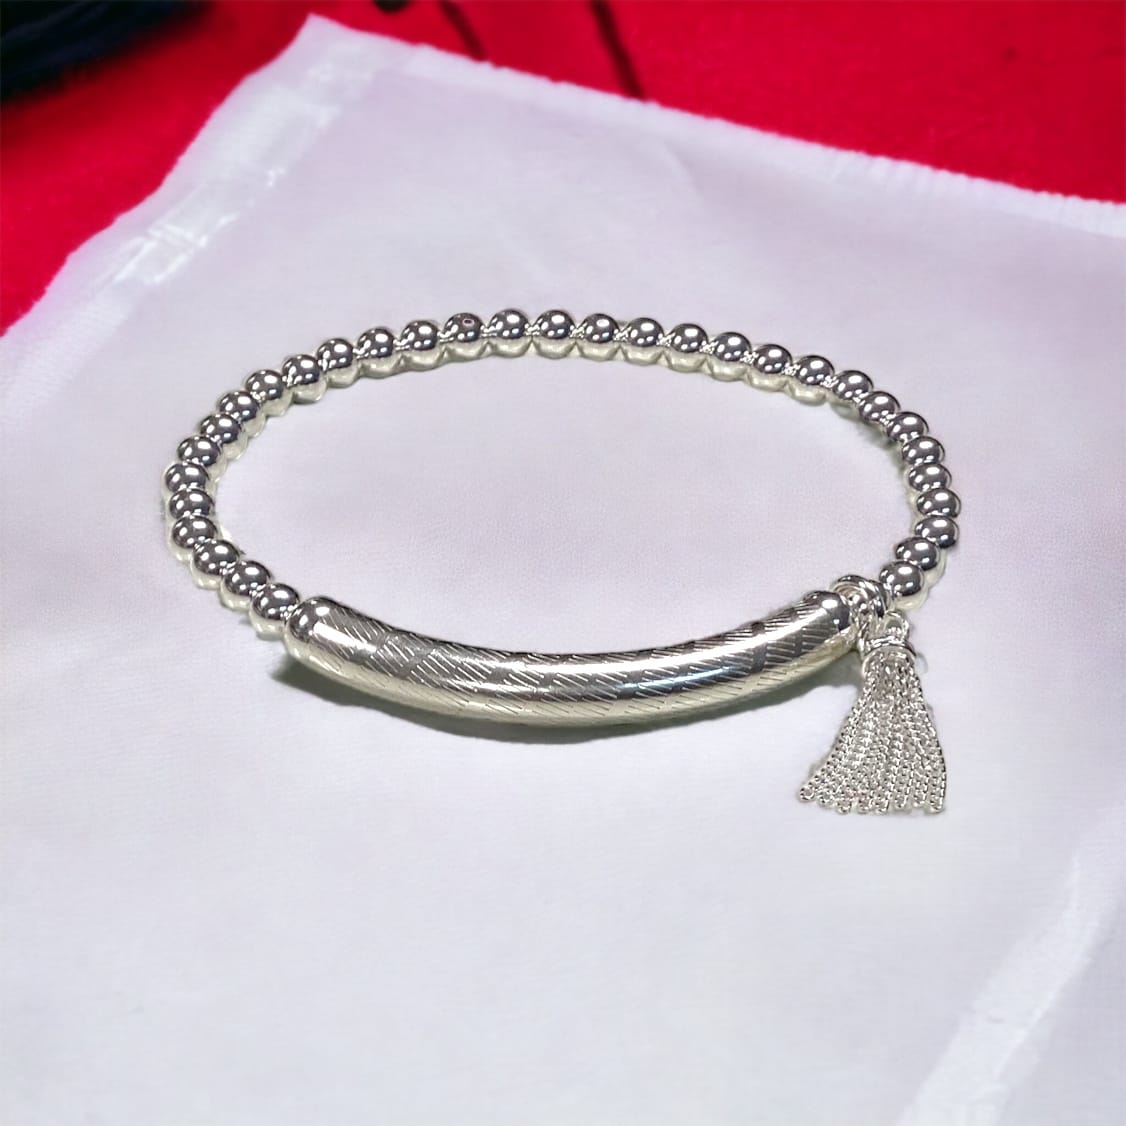 DIY Jewelry Kit - Tantalizing Tube Bangle Bracelet Kit – Too Cute